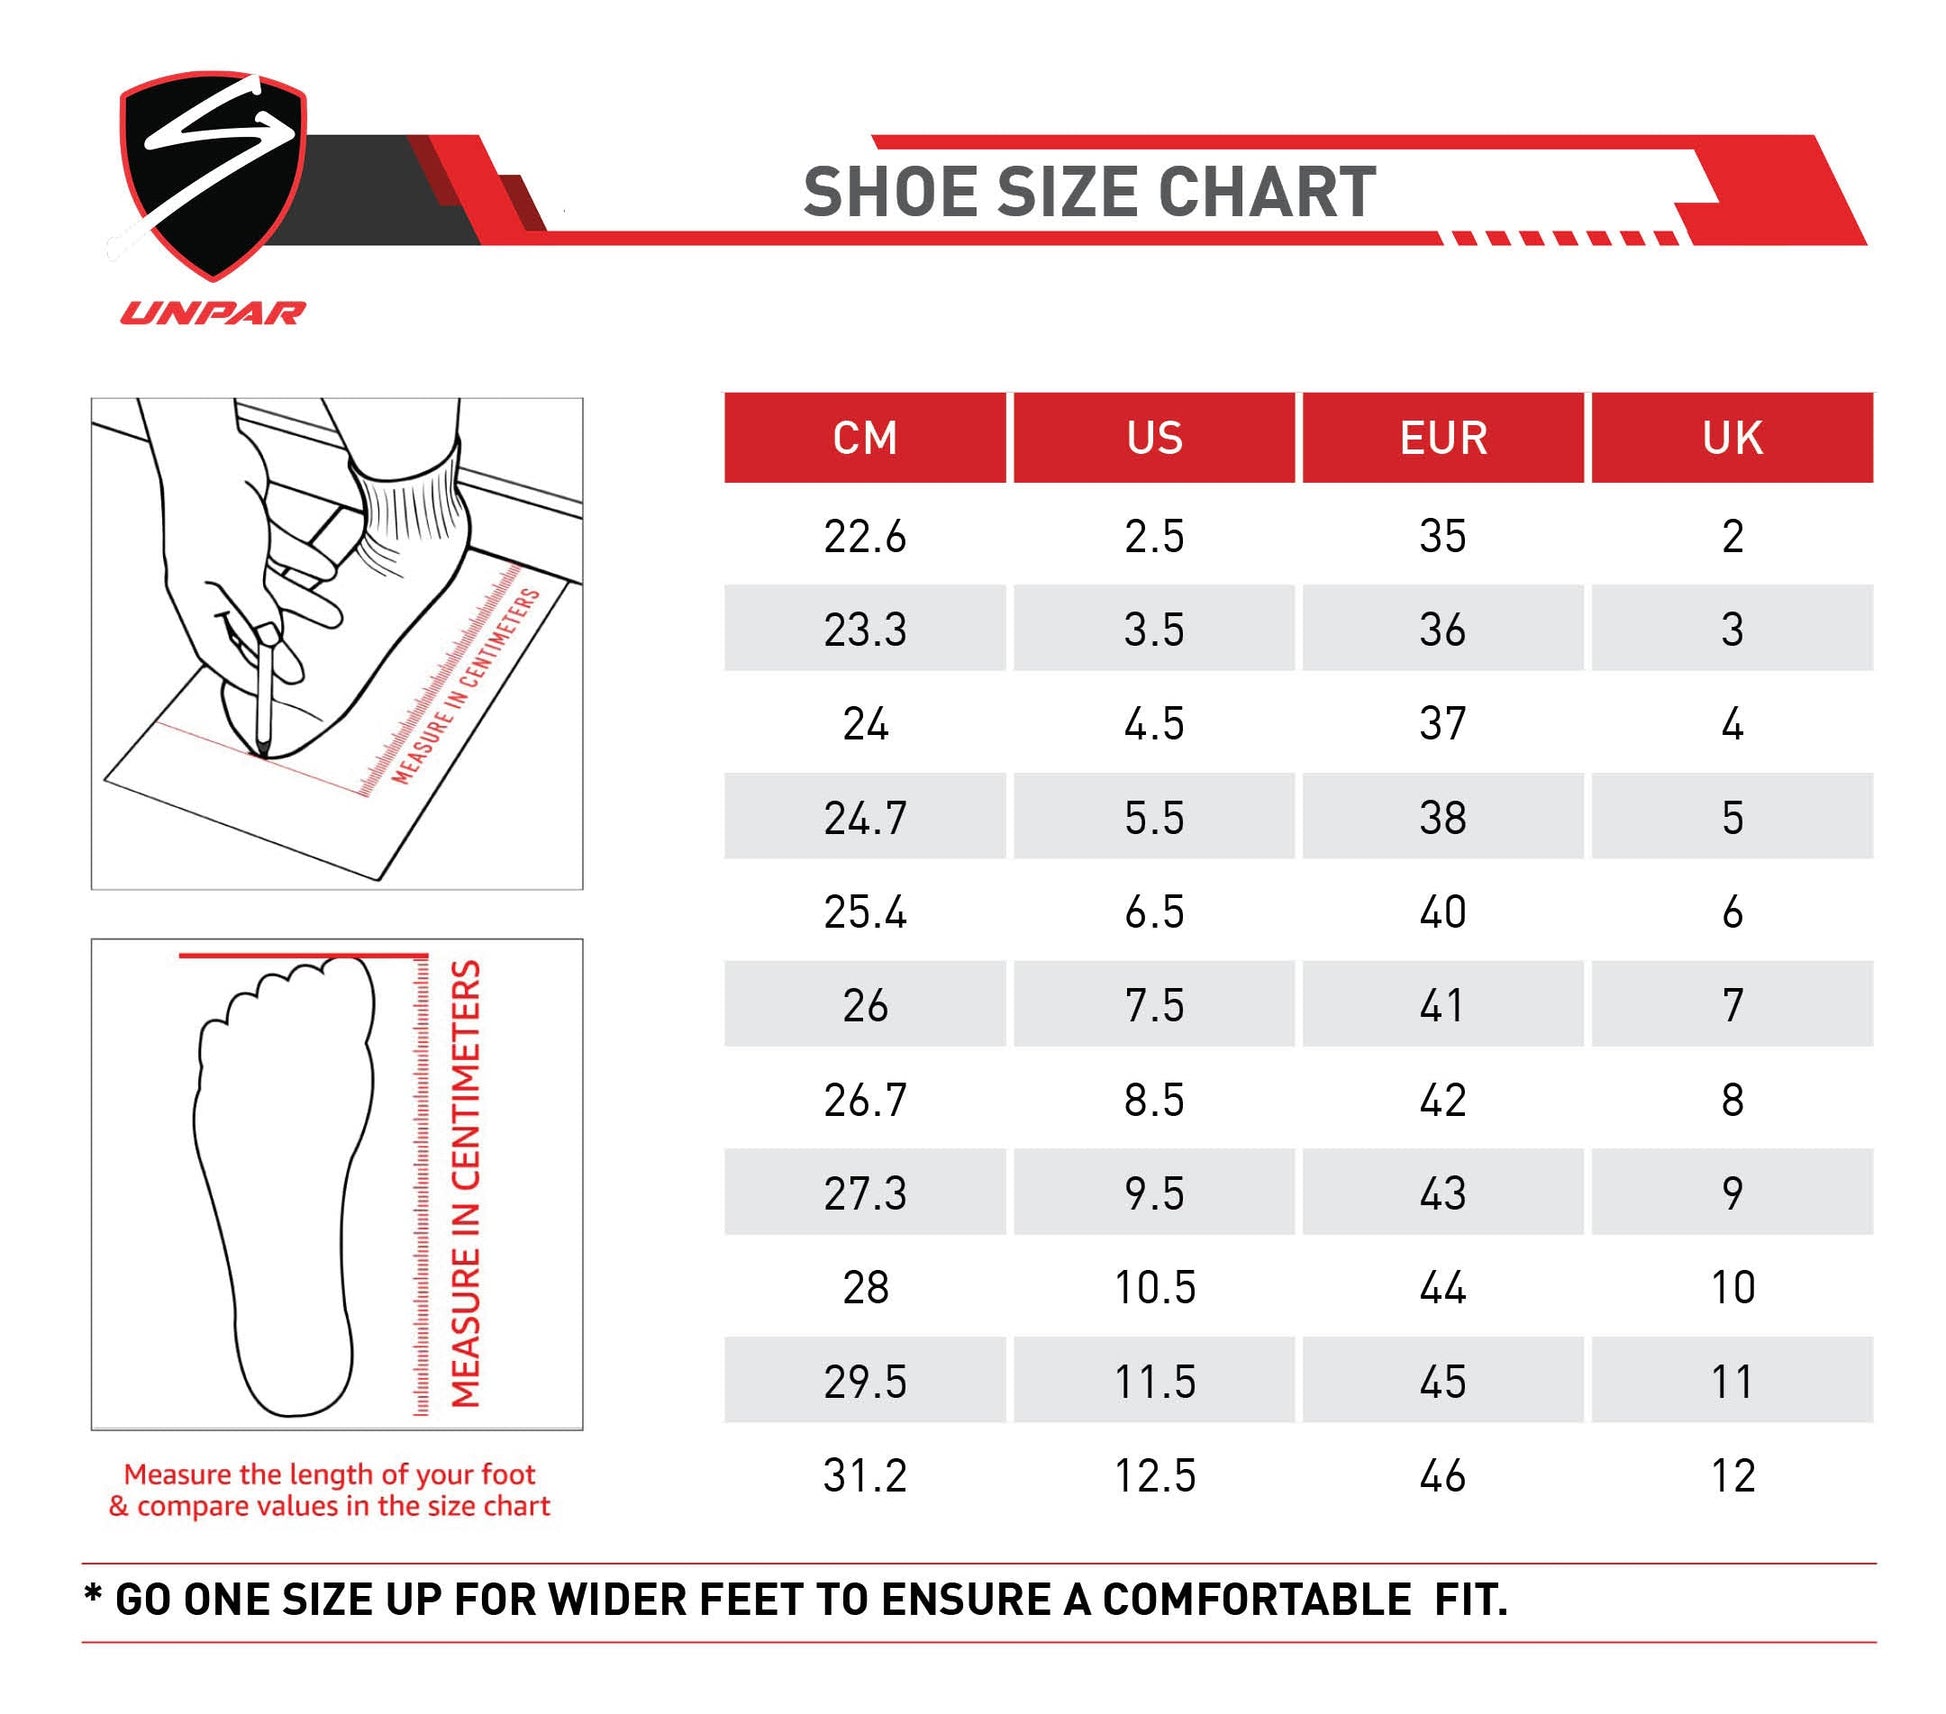 Unpar By SG Xlr8R 3.0 Running Sports Shoes For Men, Grey | Ideal for Running/Walking/Gym/Jogging/Training Sports Fashion Footwear